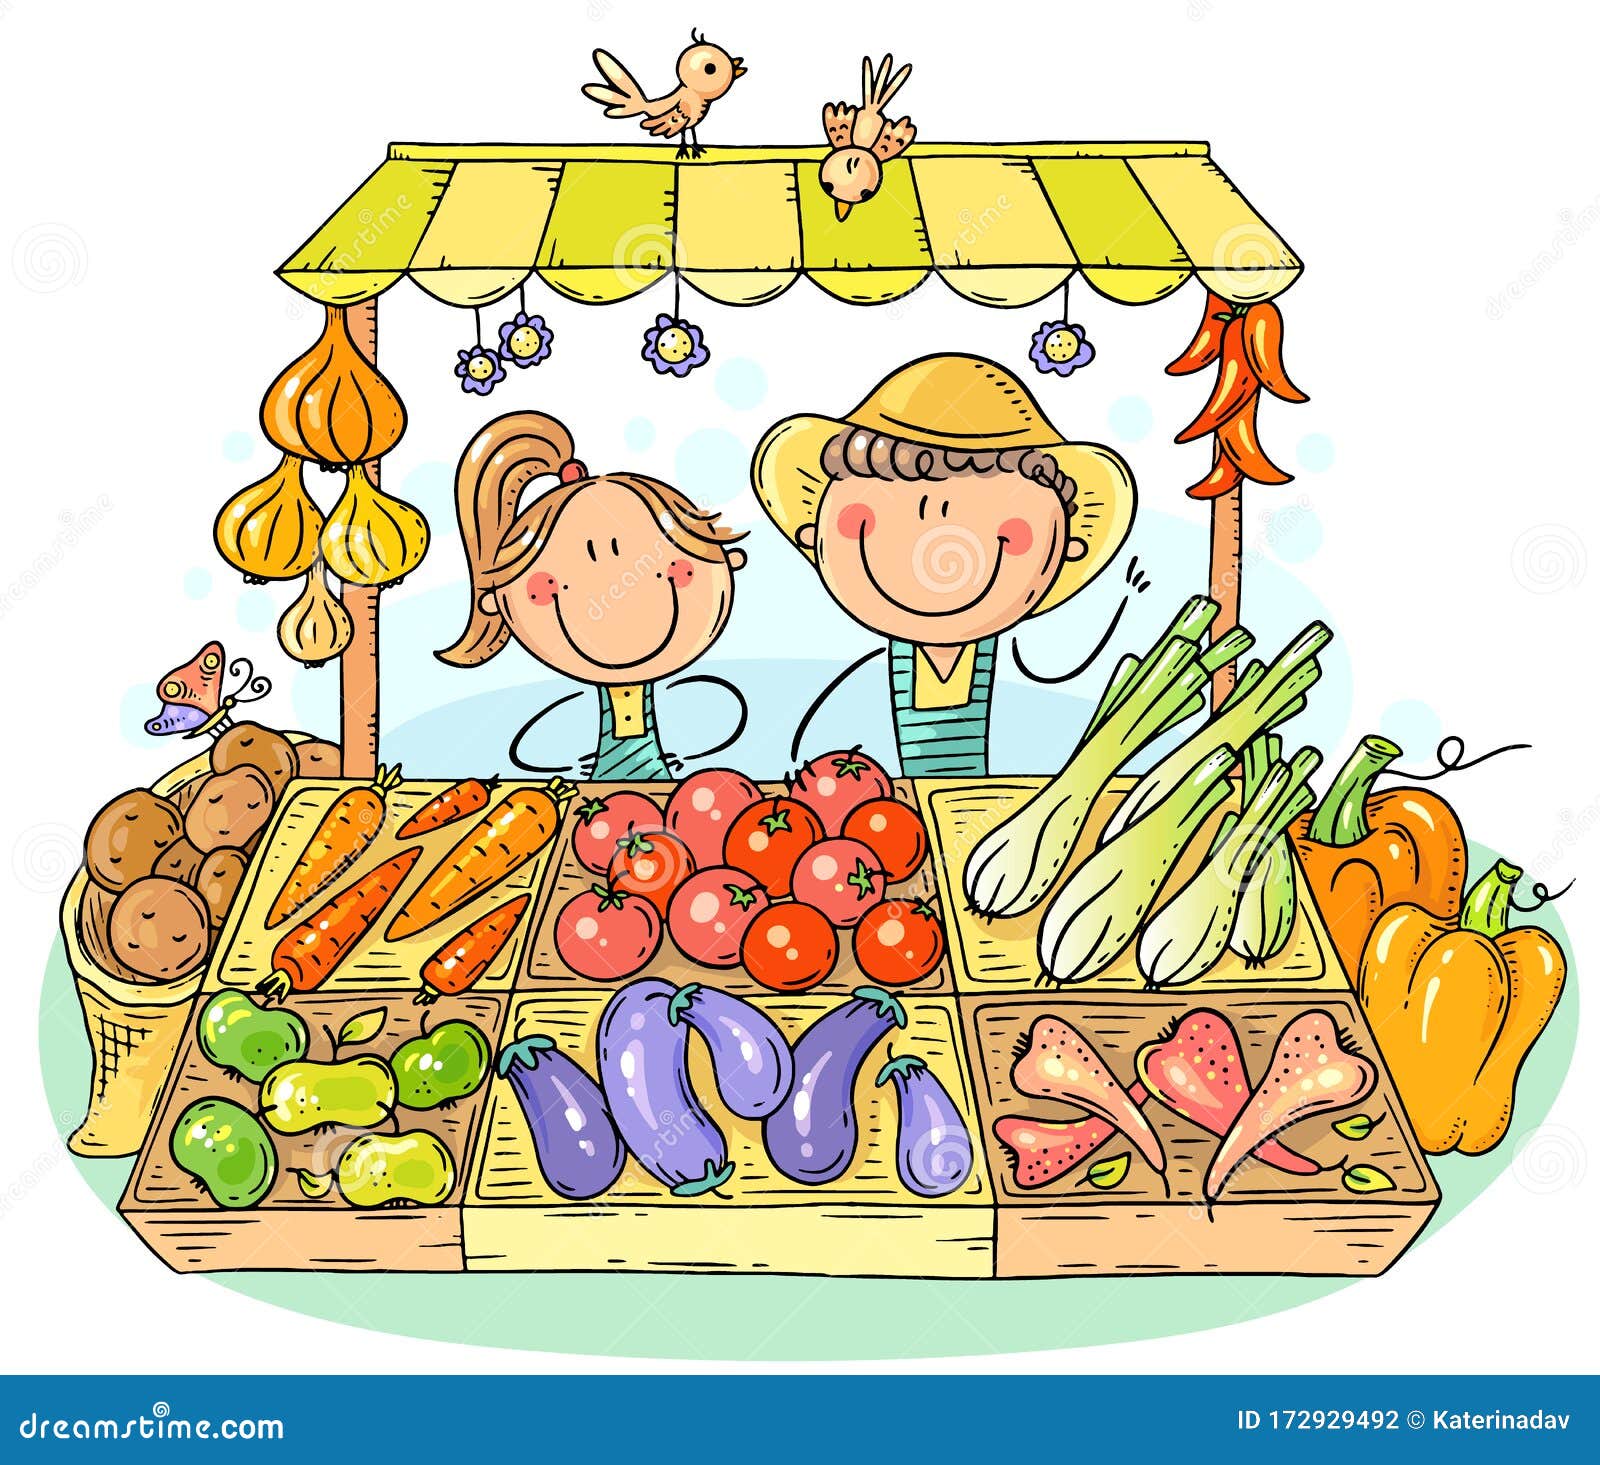 Sketch poster for farm market vegetables Vector Image